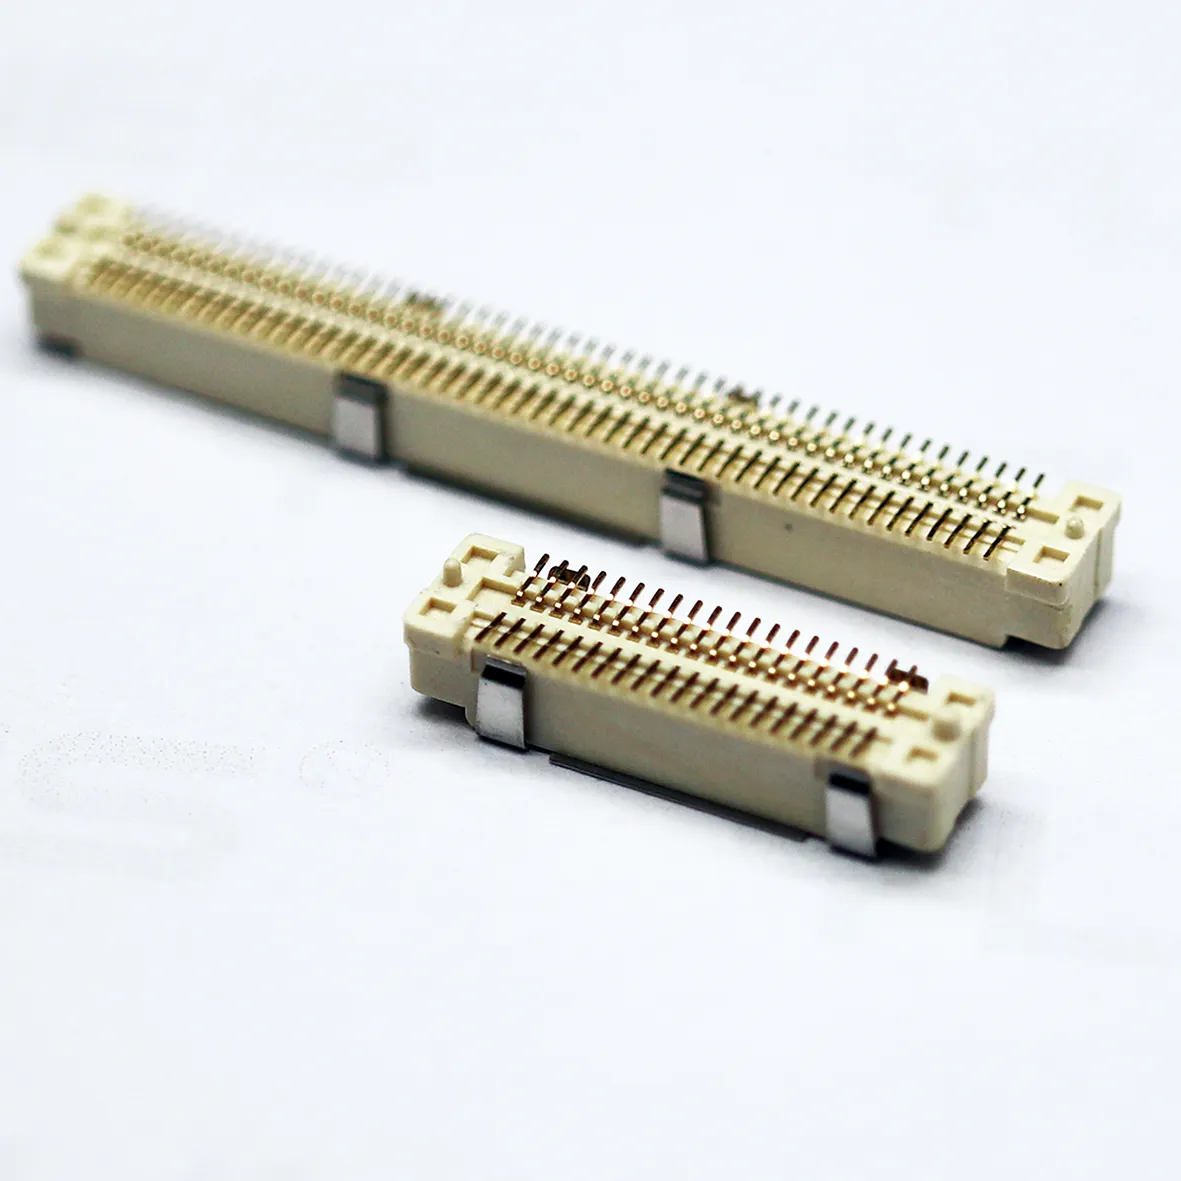 Connecteur BTB 0.8mm pas double fente SMT SMD mâle femelle carte PCB pour embarquer le connecteur